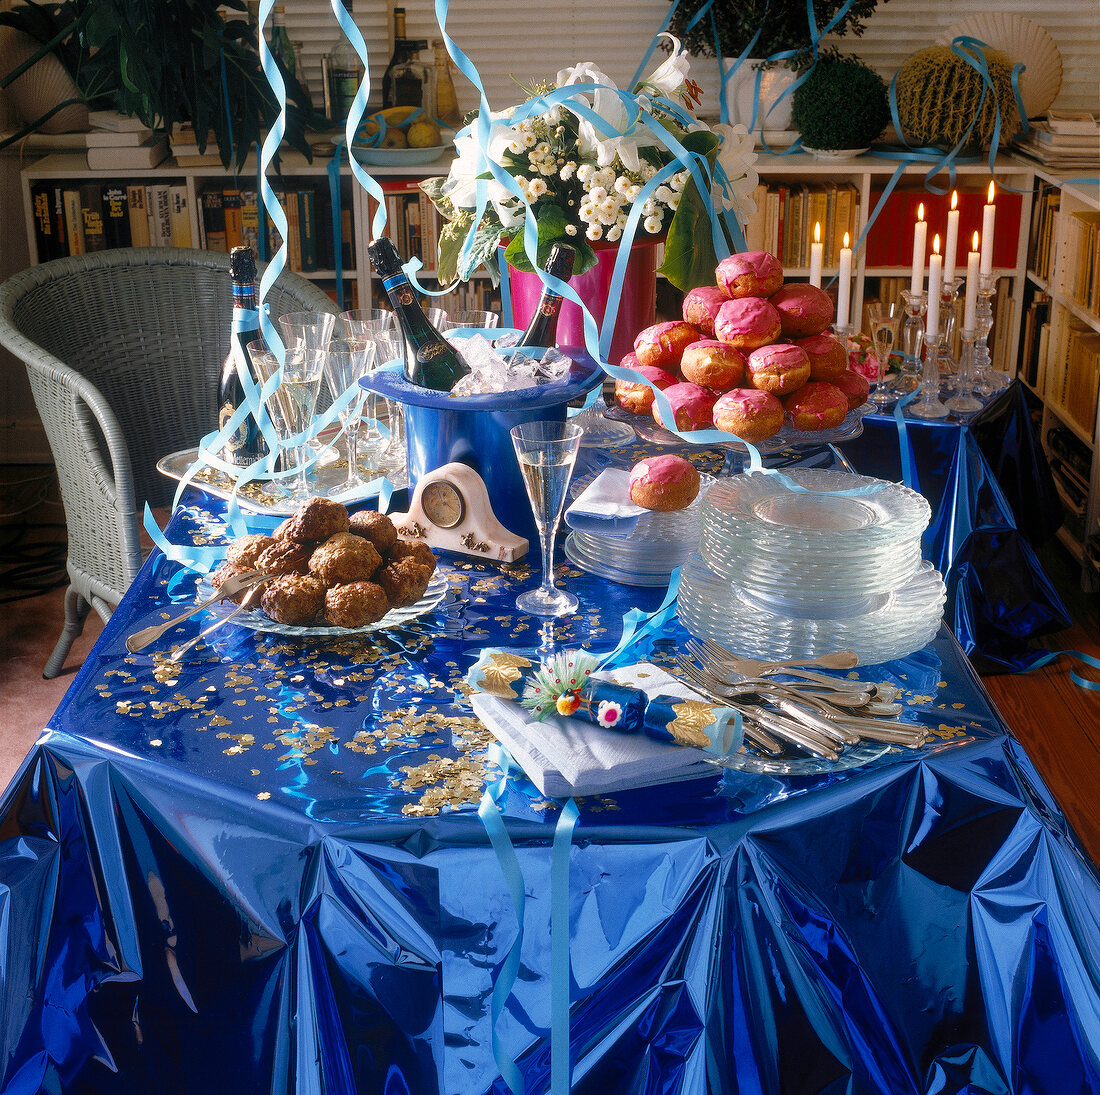 Silvestertisch mit blauer glänzender Tischdecke, Blumen, Konfetti, Essen